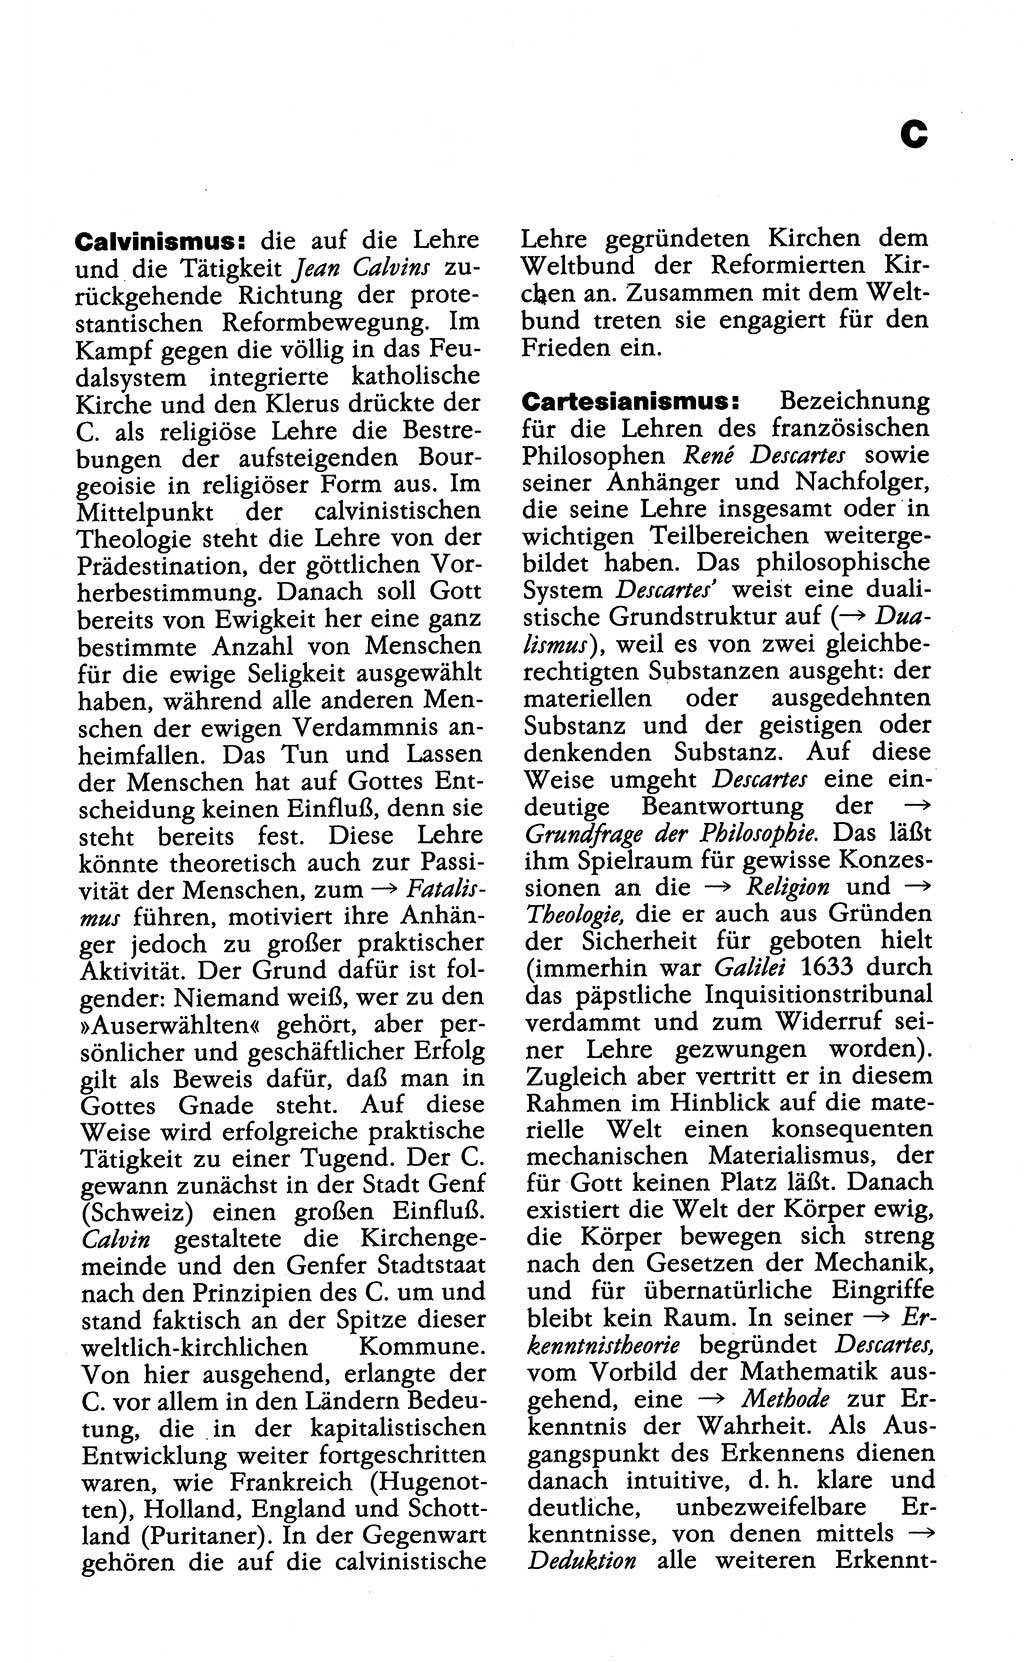 Wörterbuch der marxistisch-leninistischen Philosophie [Deutsche Demokratische Republik (DDR)] 1985, Seite 93 (Wb. ML Phil. DDR 1985, S. 93)